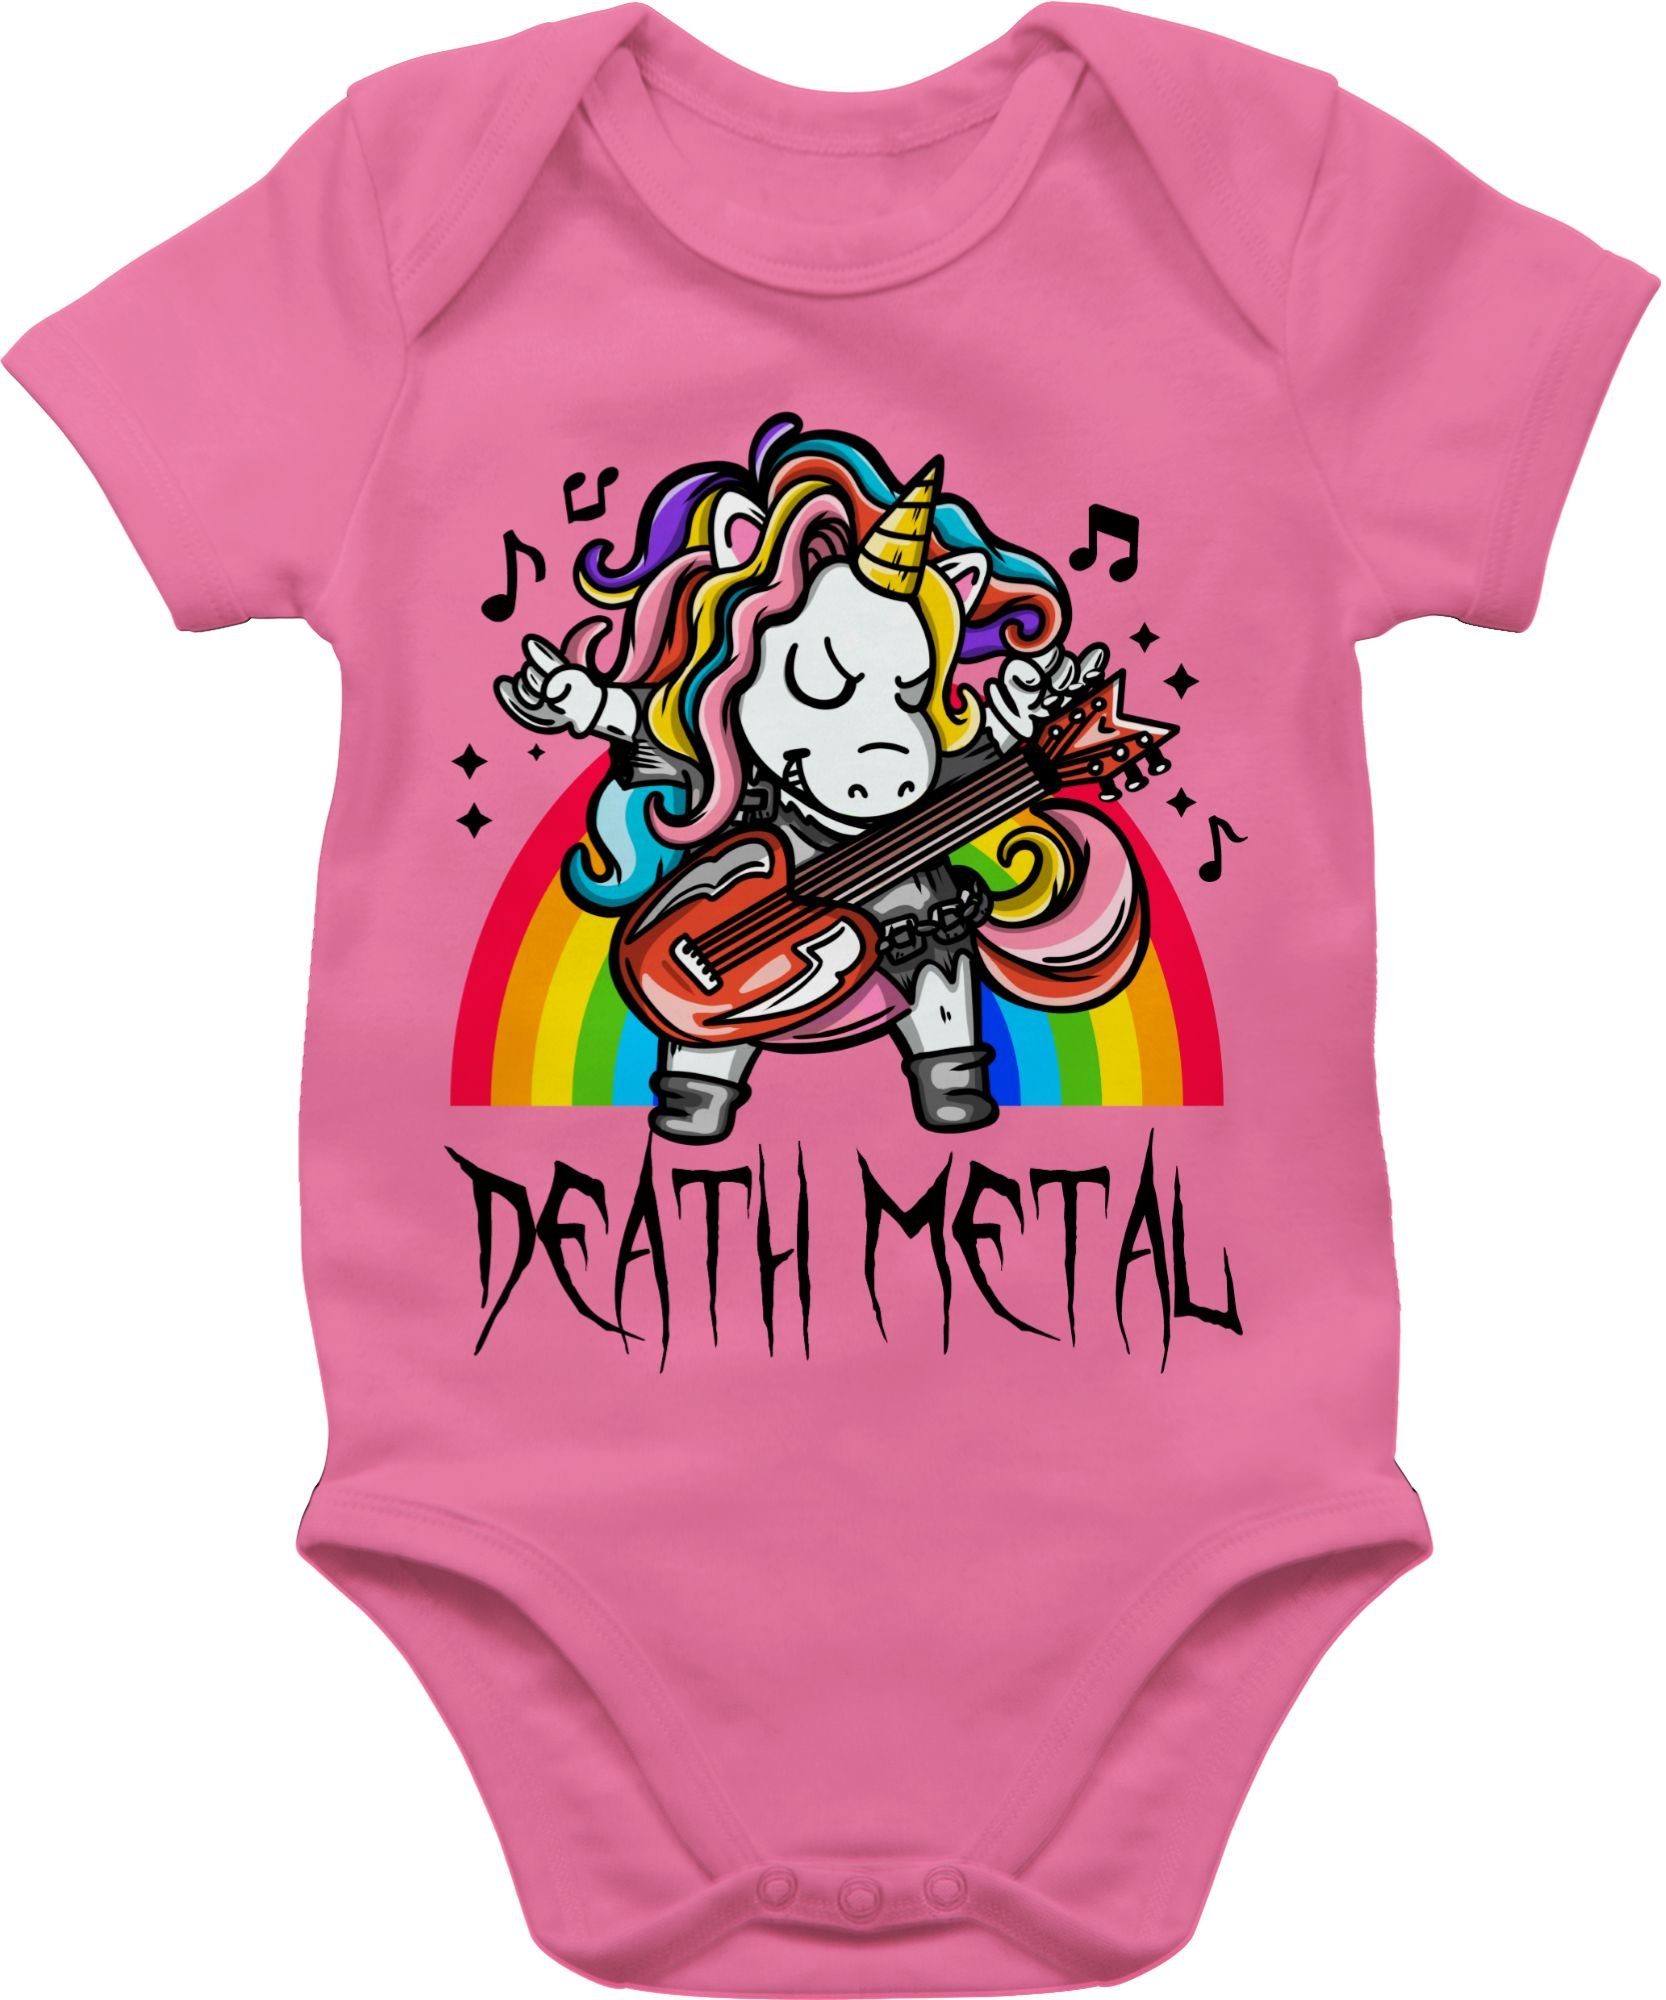 Shirtracer Shirtbody Death Metal Einhorn - Unicorn Sprüche Baby 1 Pink